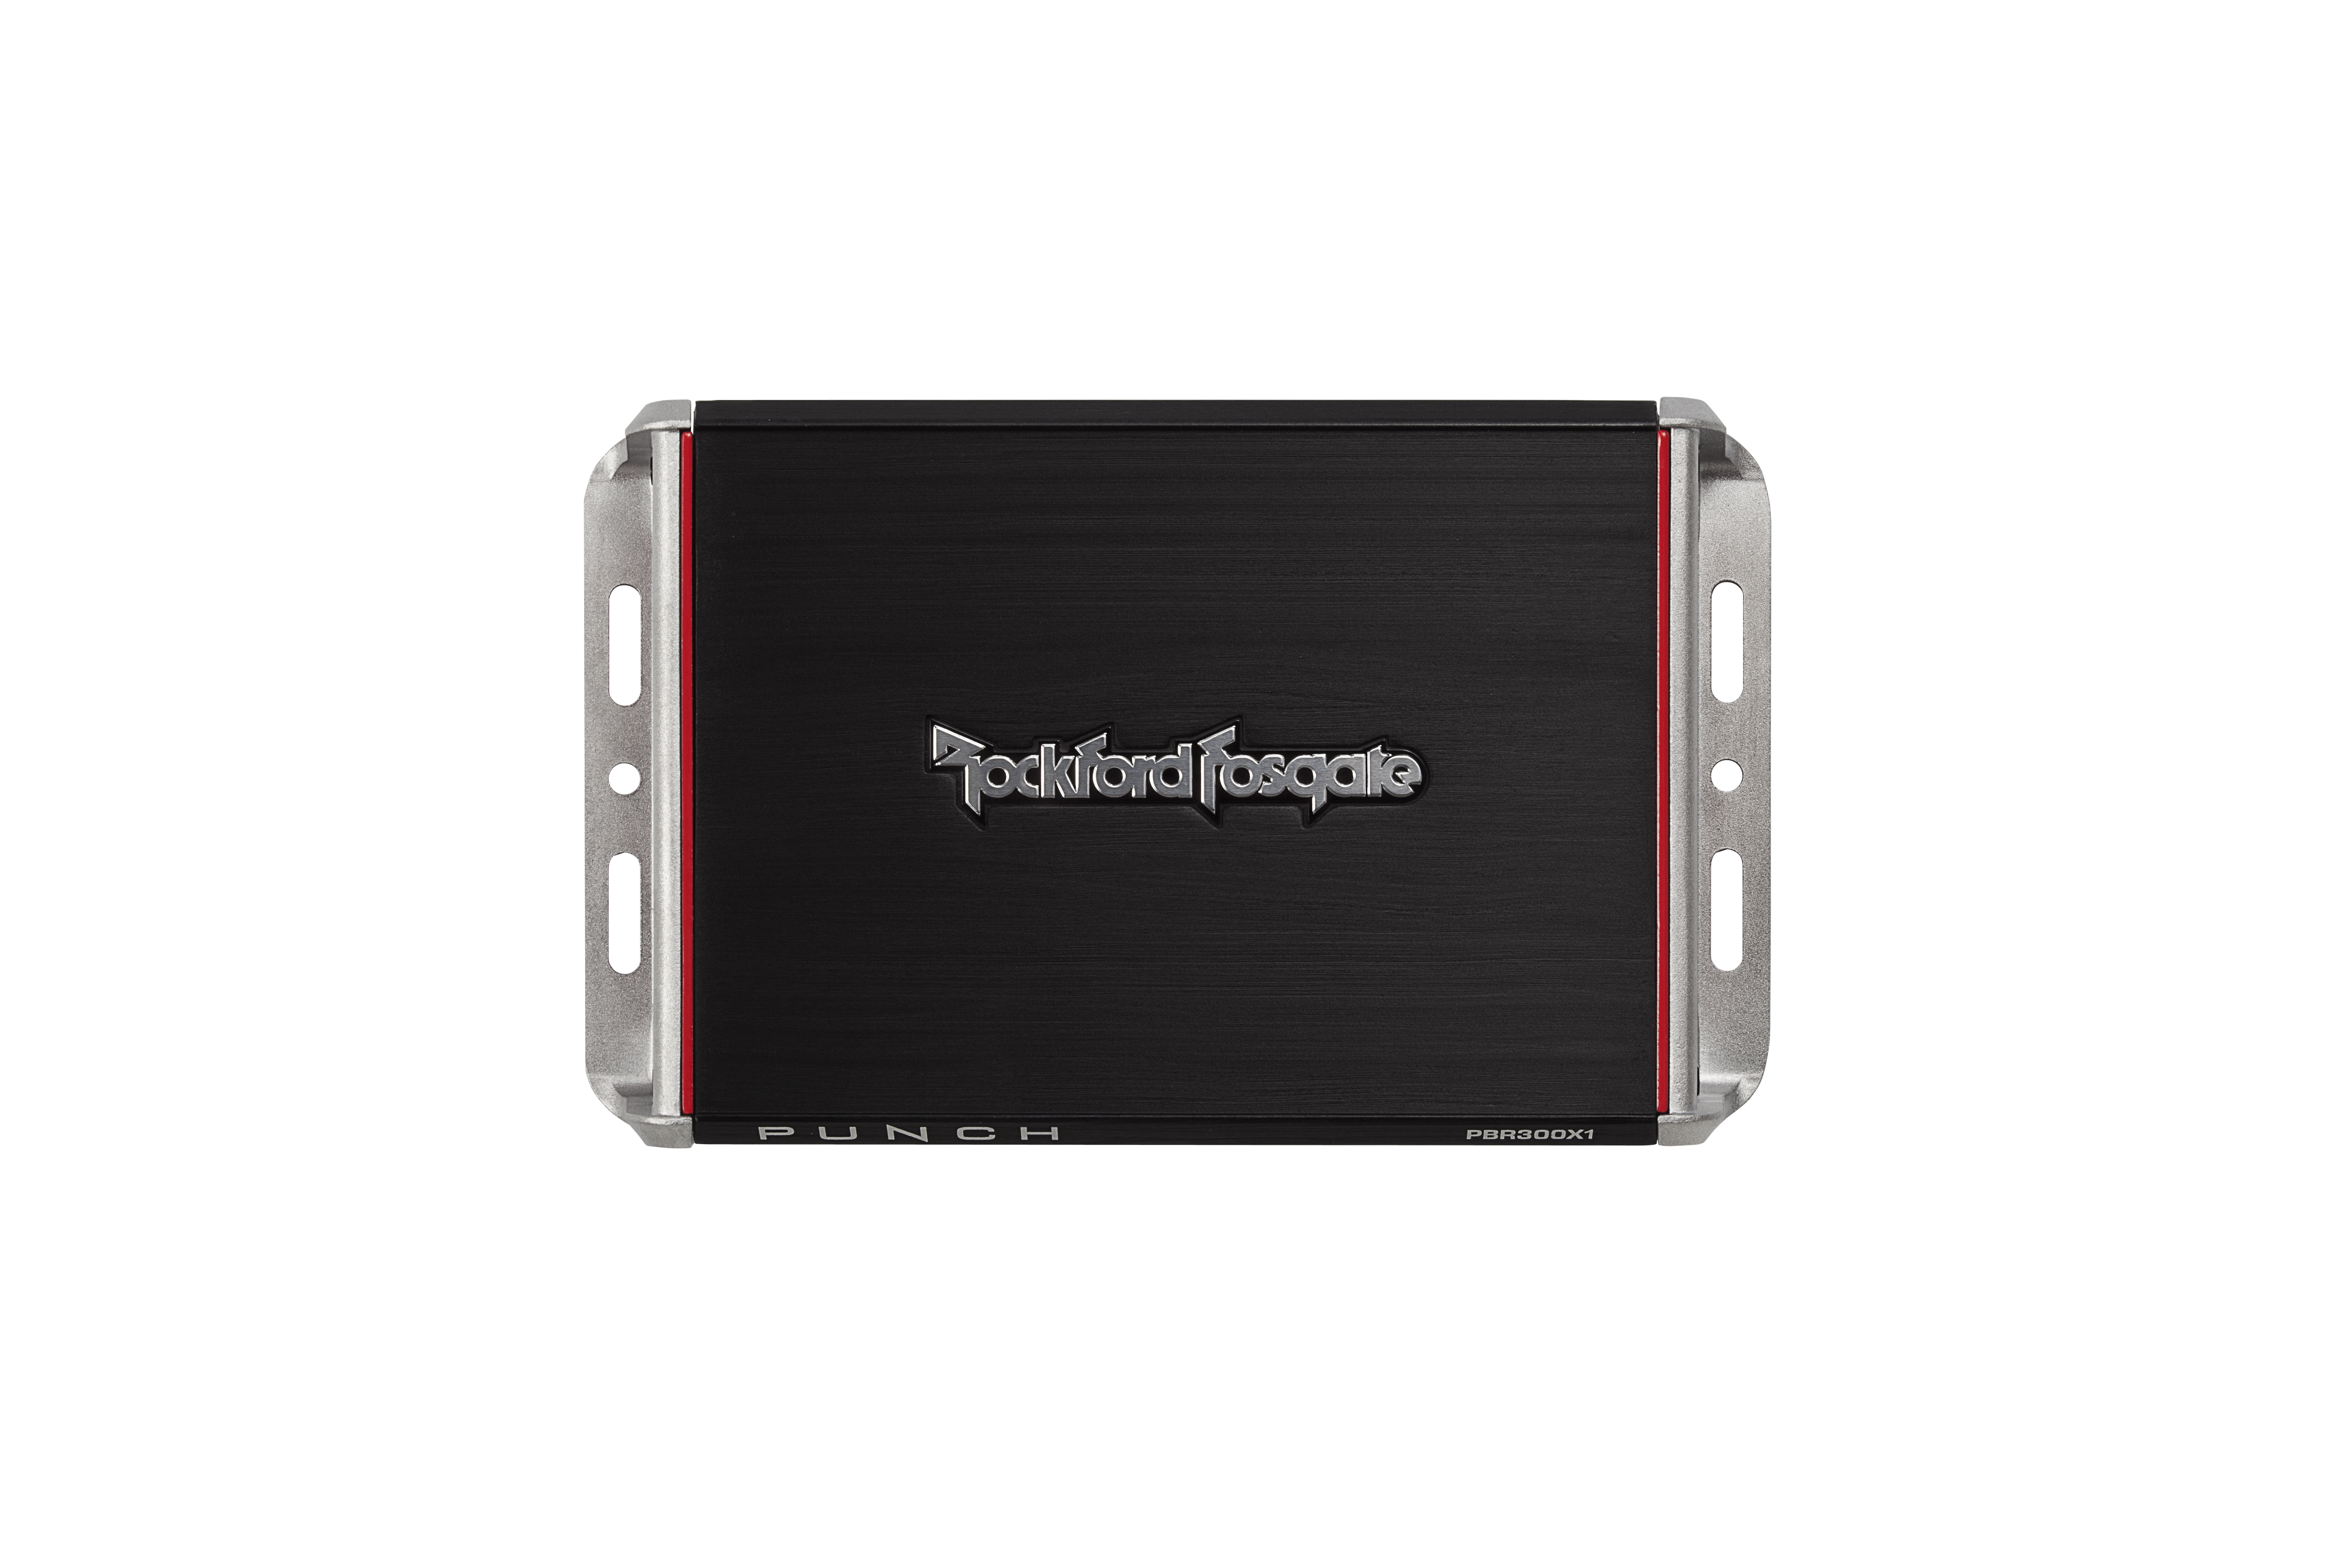 ROCKFORD FOSGATE PUNCH Amplifier PBR300x1 Monoblock Amp Endstufe Mono Verstärker